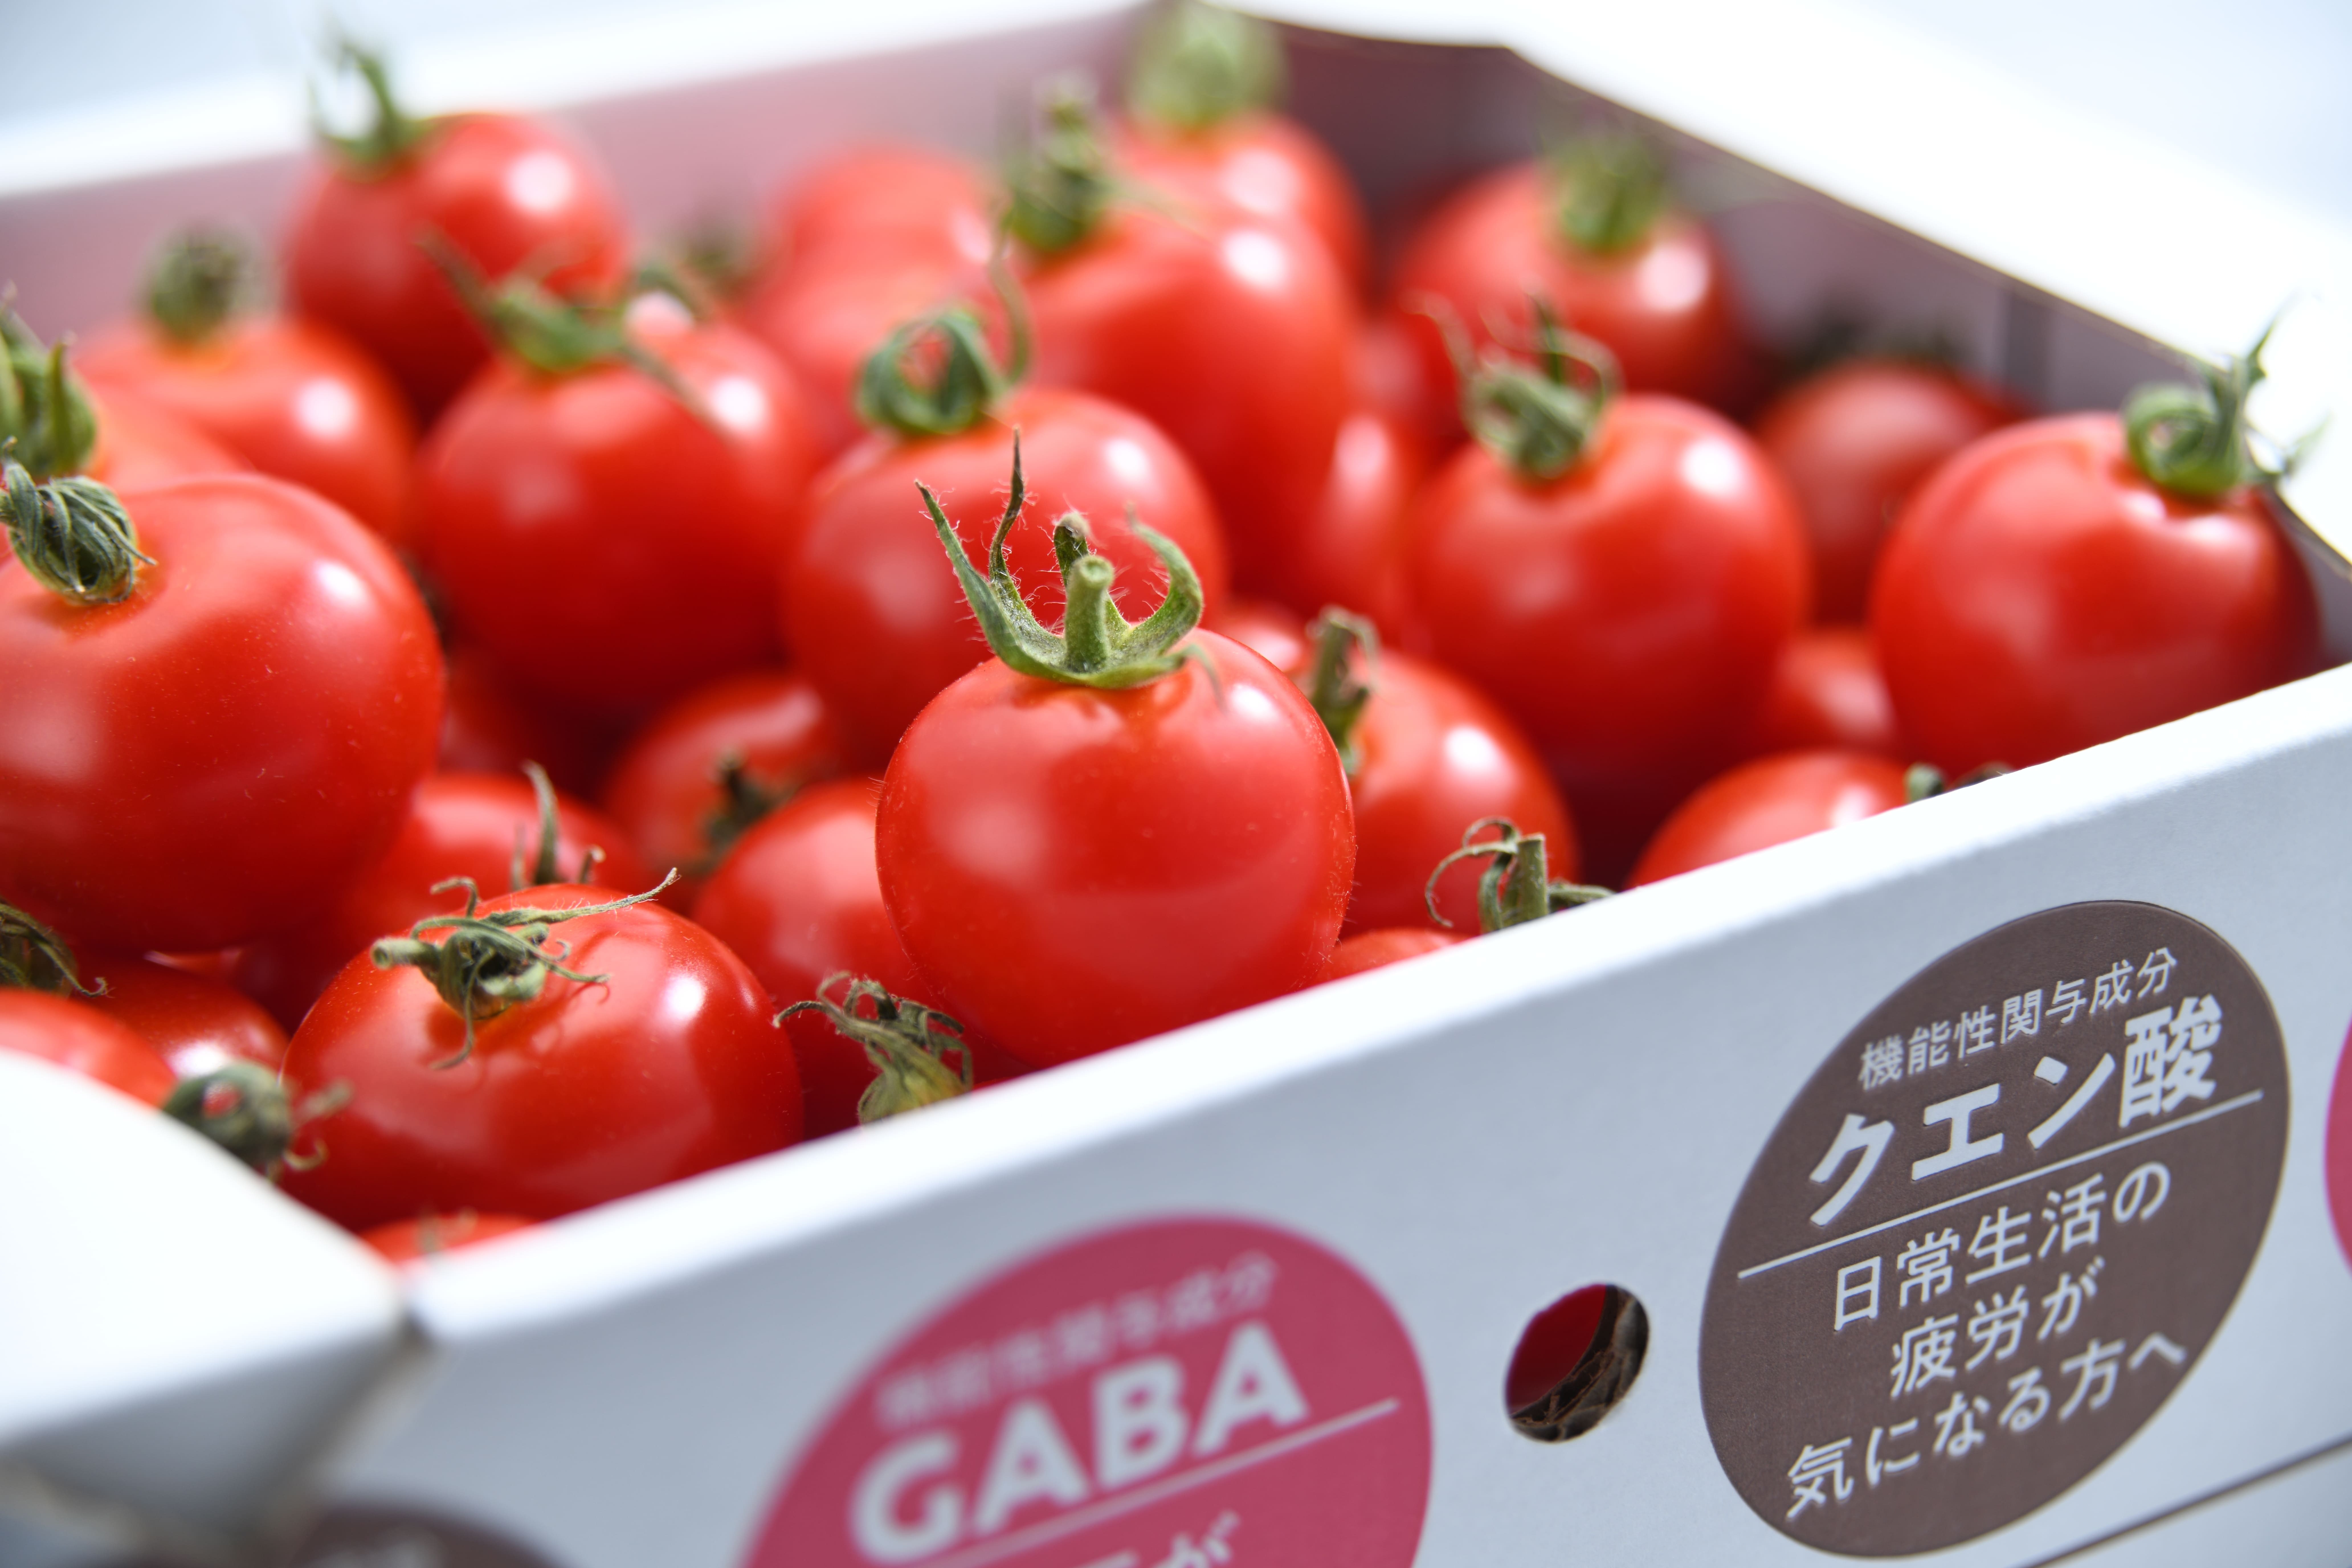 大阪のゴム製造会社が農業参入して栽培した
機能性表示食品登録「Tricho(トリコ)」トマトの試食販売会を
11月4日・5日に伊勢丹新宿店で実施